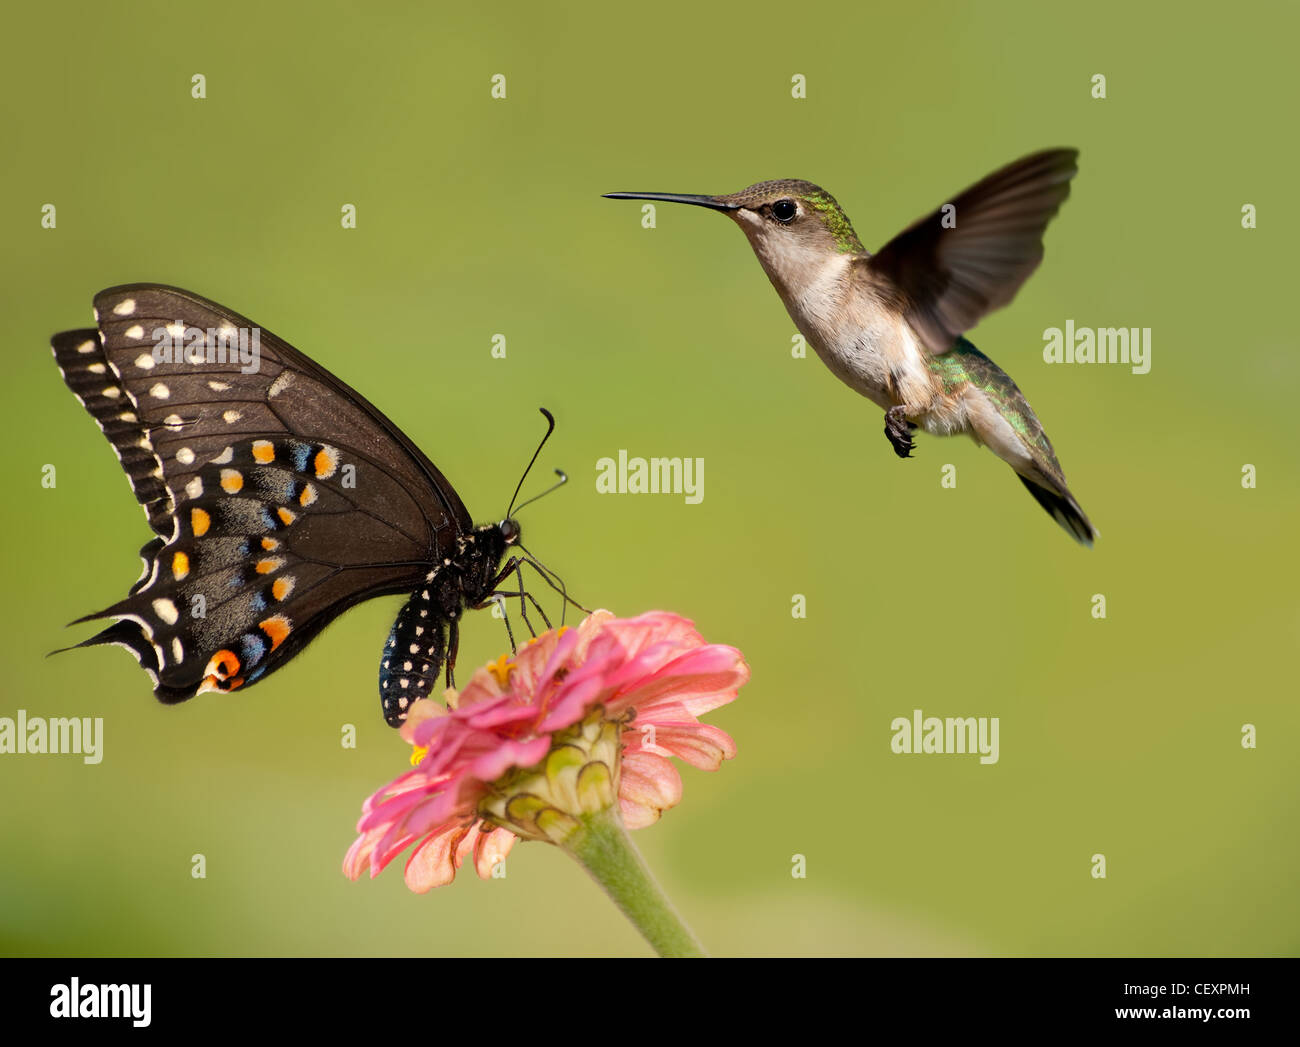 Nero a coda di rondine di alimentazione a farfalla sul fiore rosa con un colibrì passando accanto ad esso Foto Stock